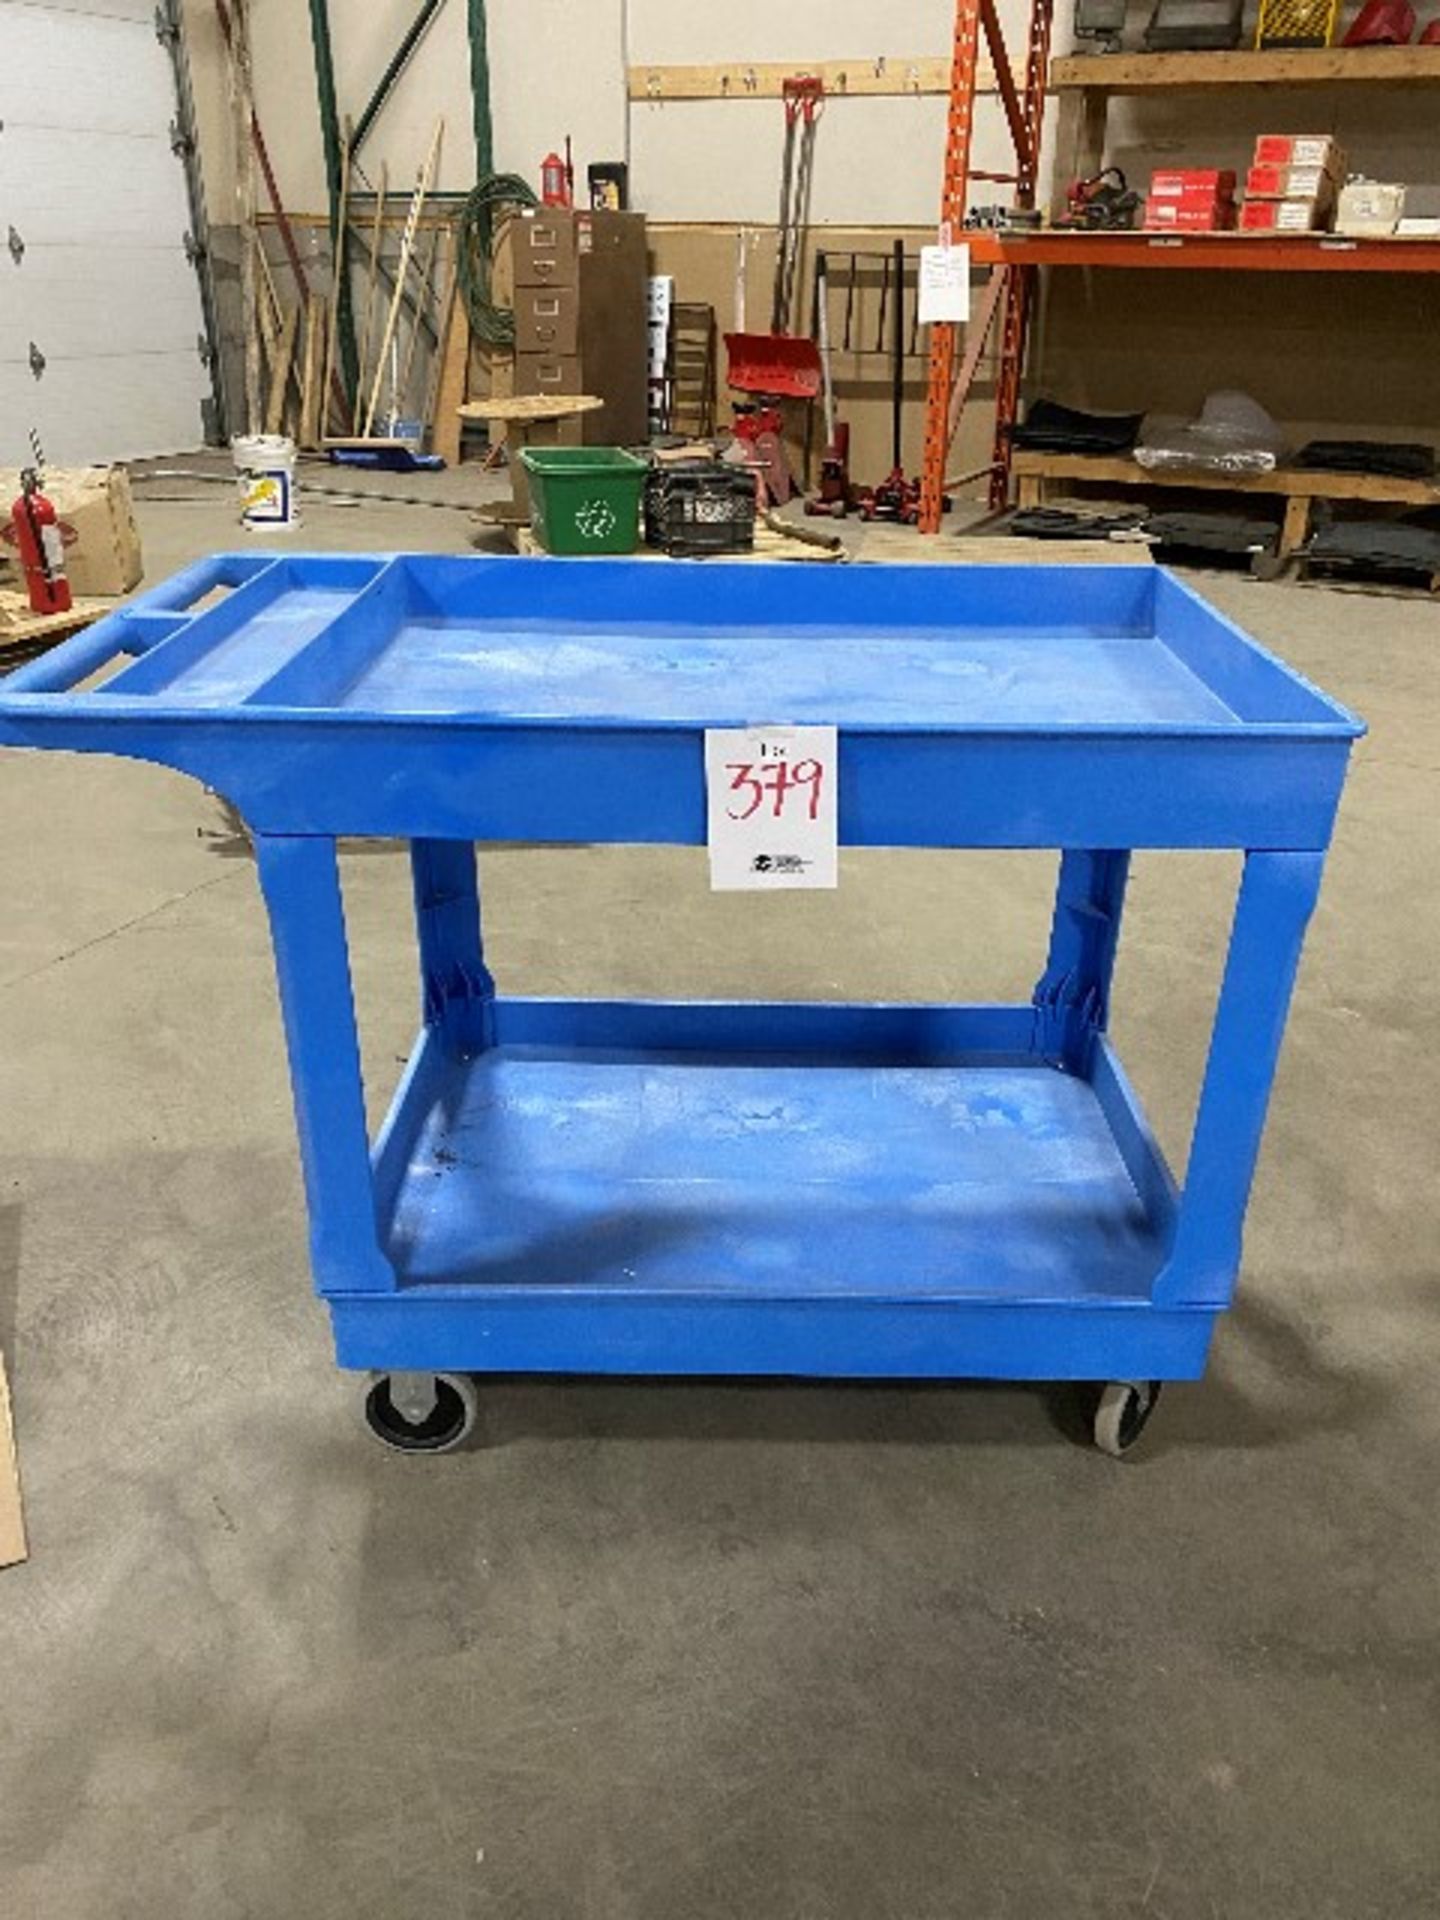 Uline mobile cart, blue